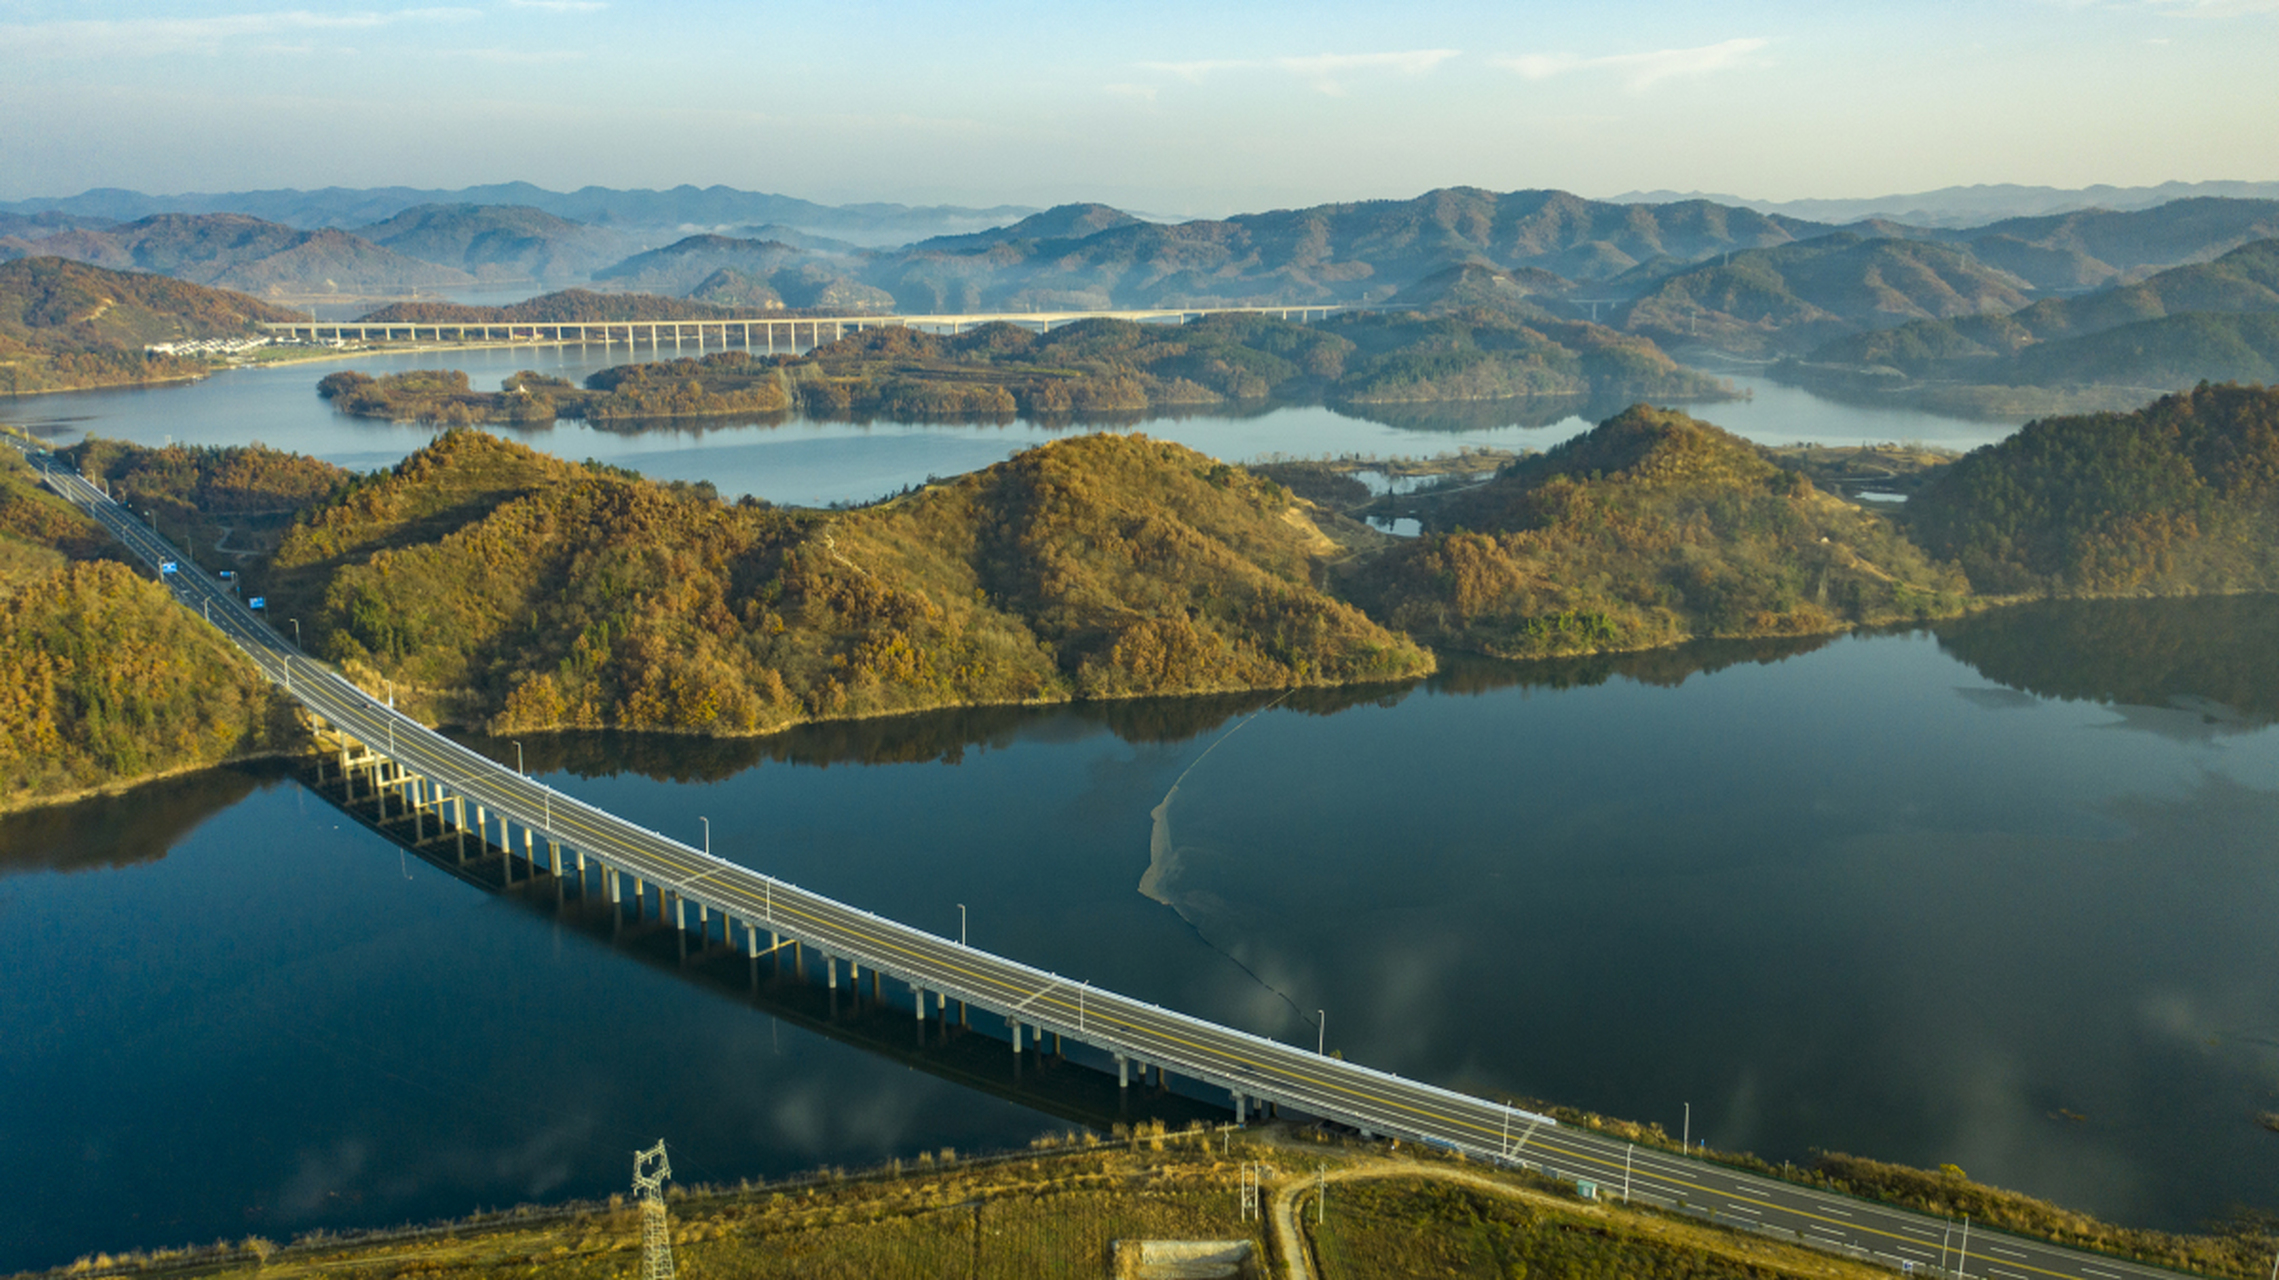 丹江口水库是位于湖北省丹江口市的大型水库,具有宏伟的水坝和风景